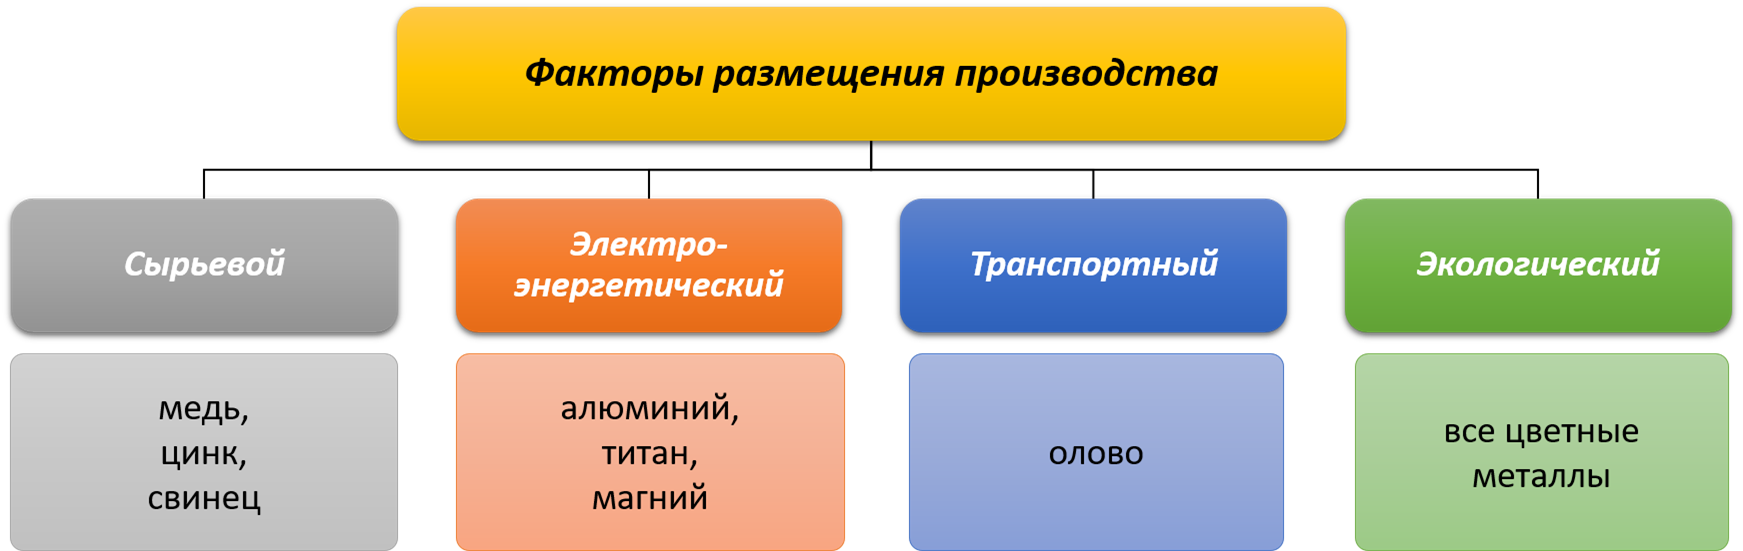 Факторами размещения топливной промышленности принято считать совокупность условий для наиболее раци | geoguides.ru